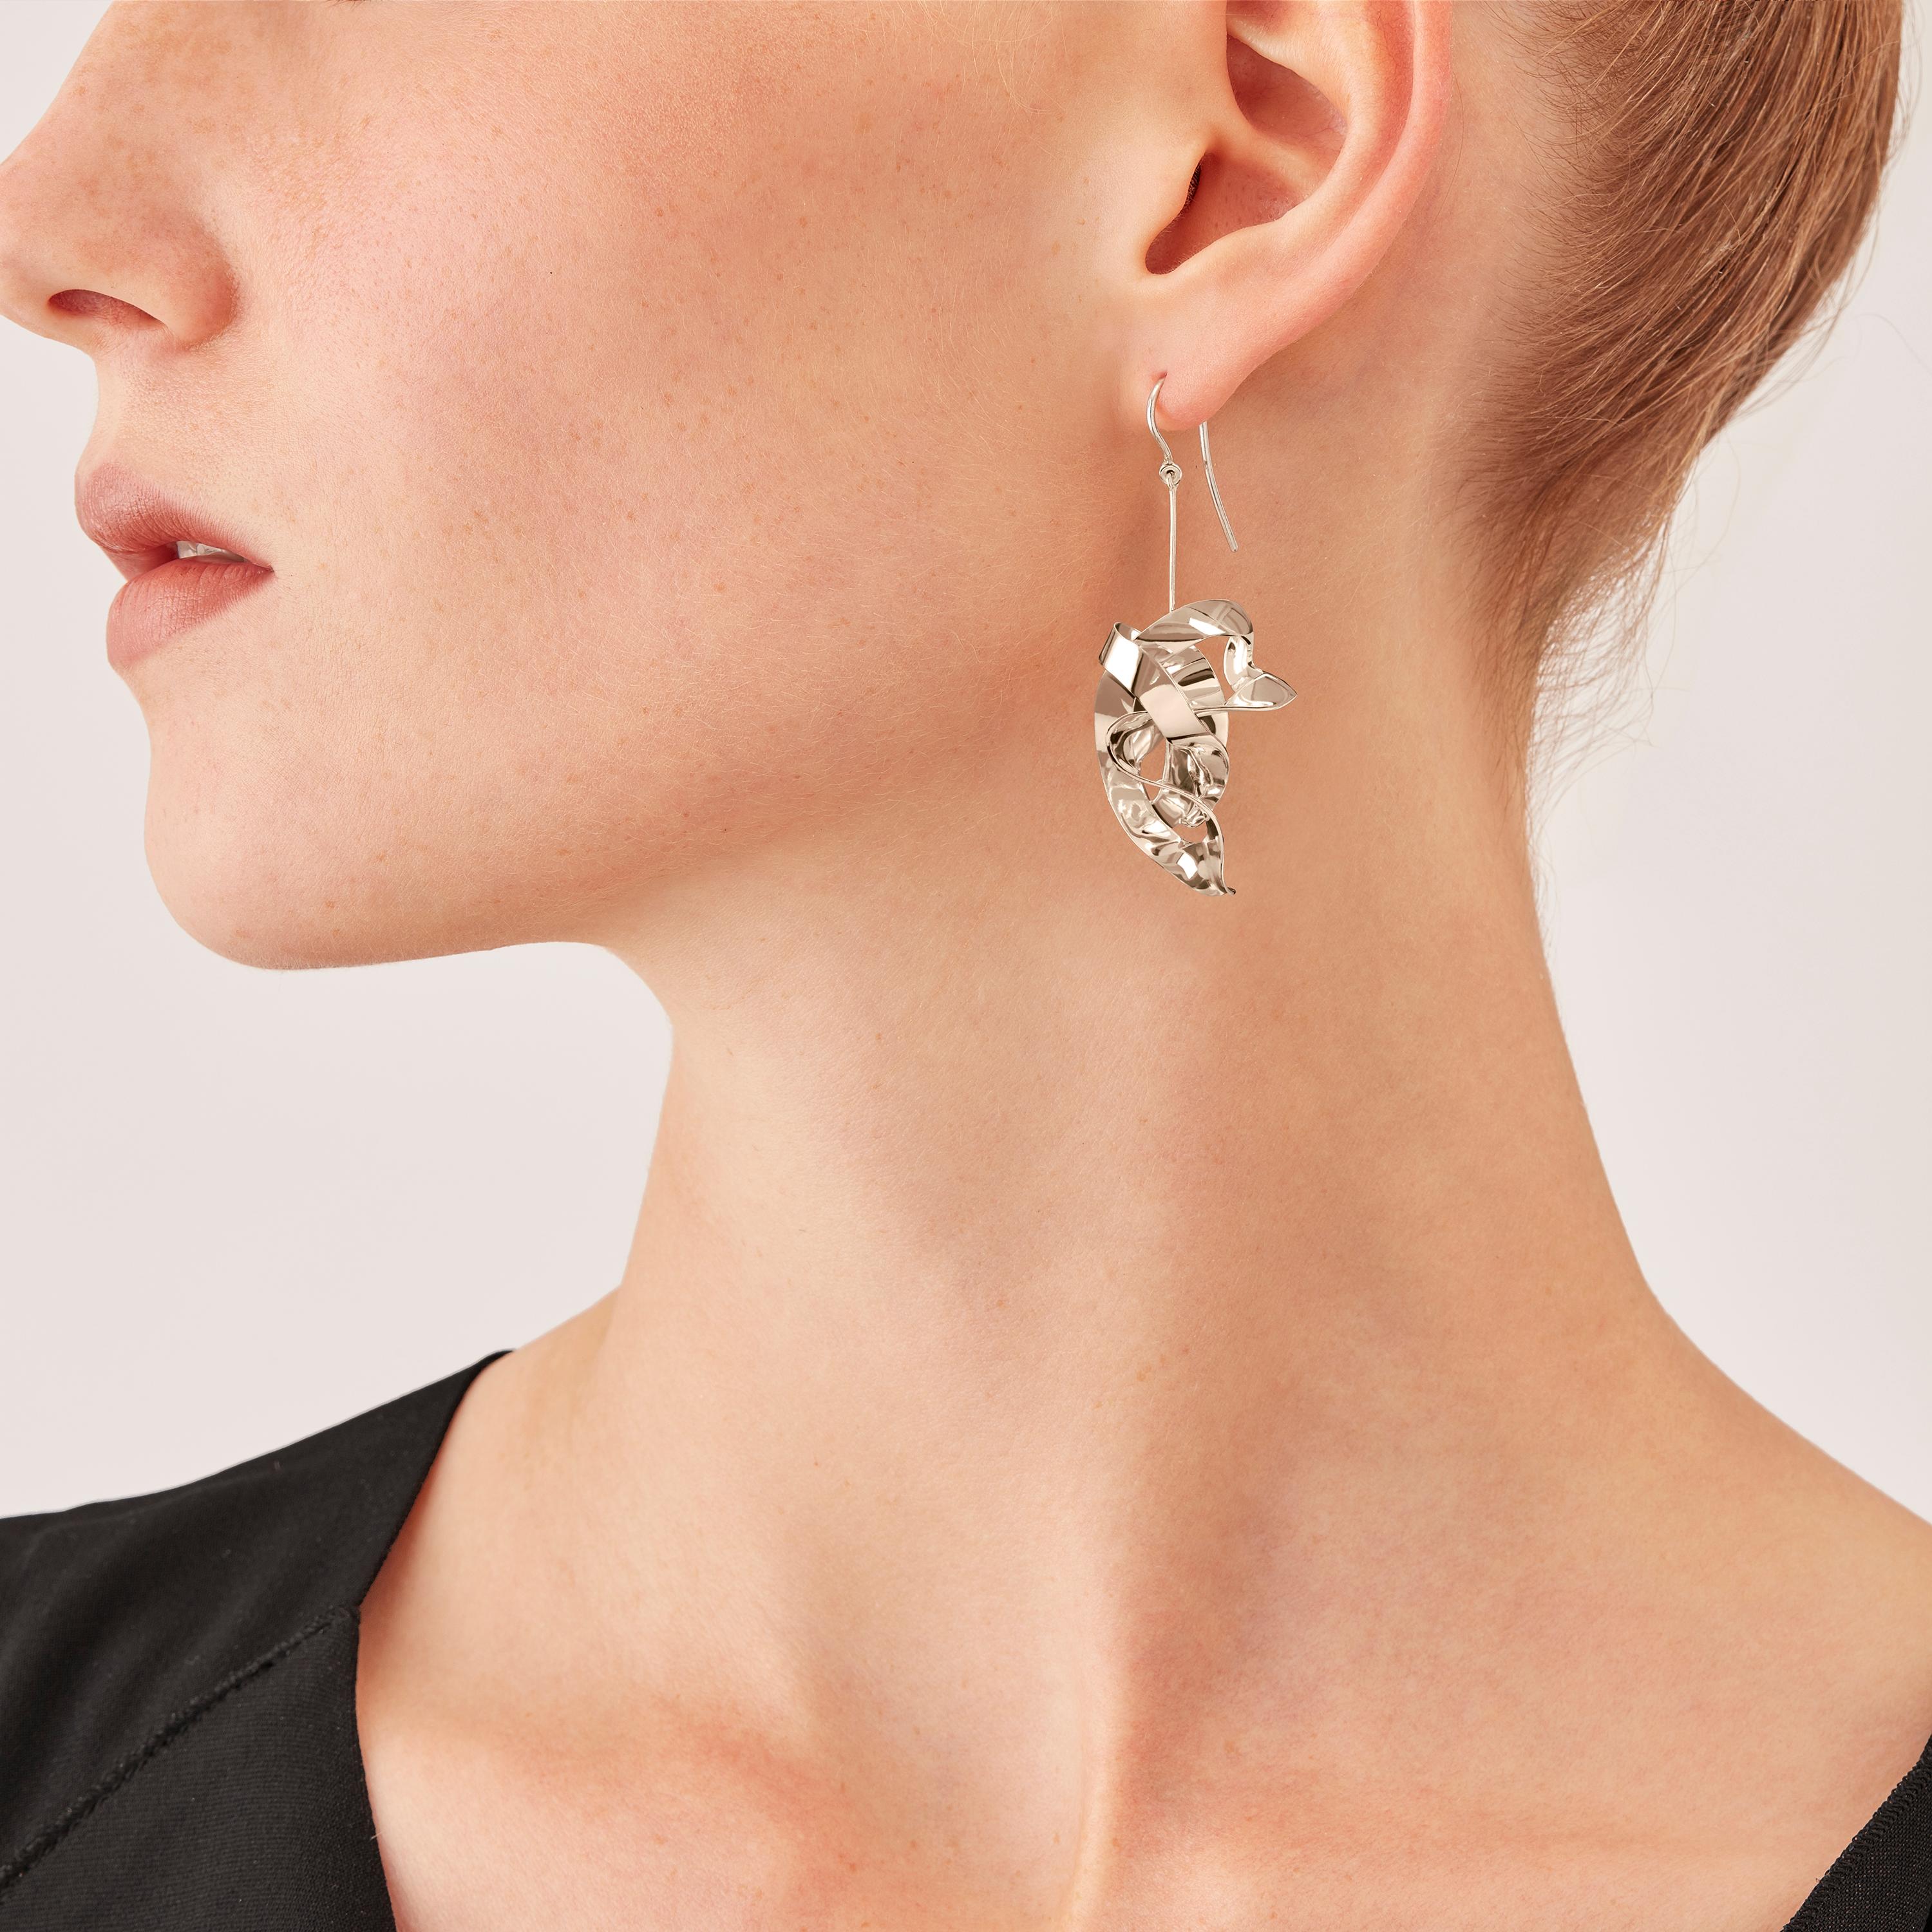 sterling silver dangle earrings